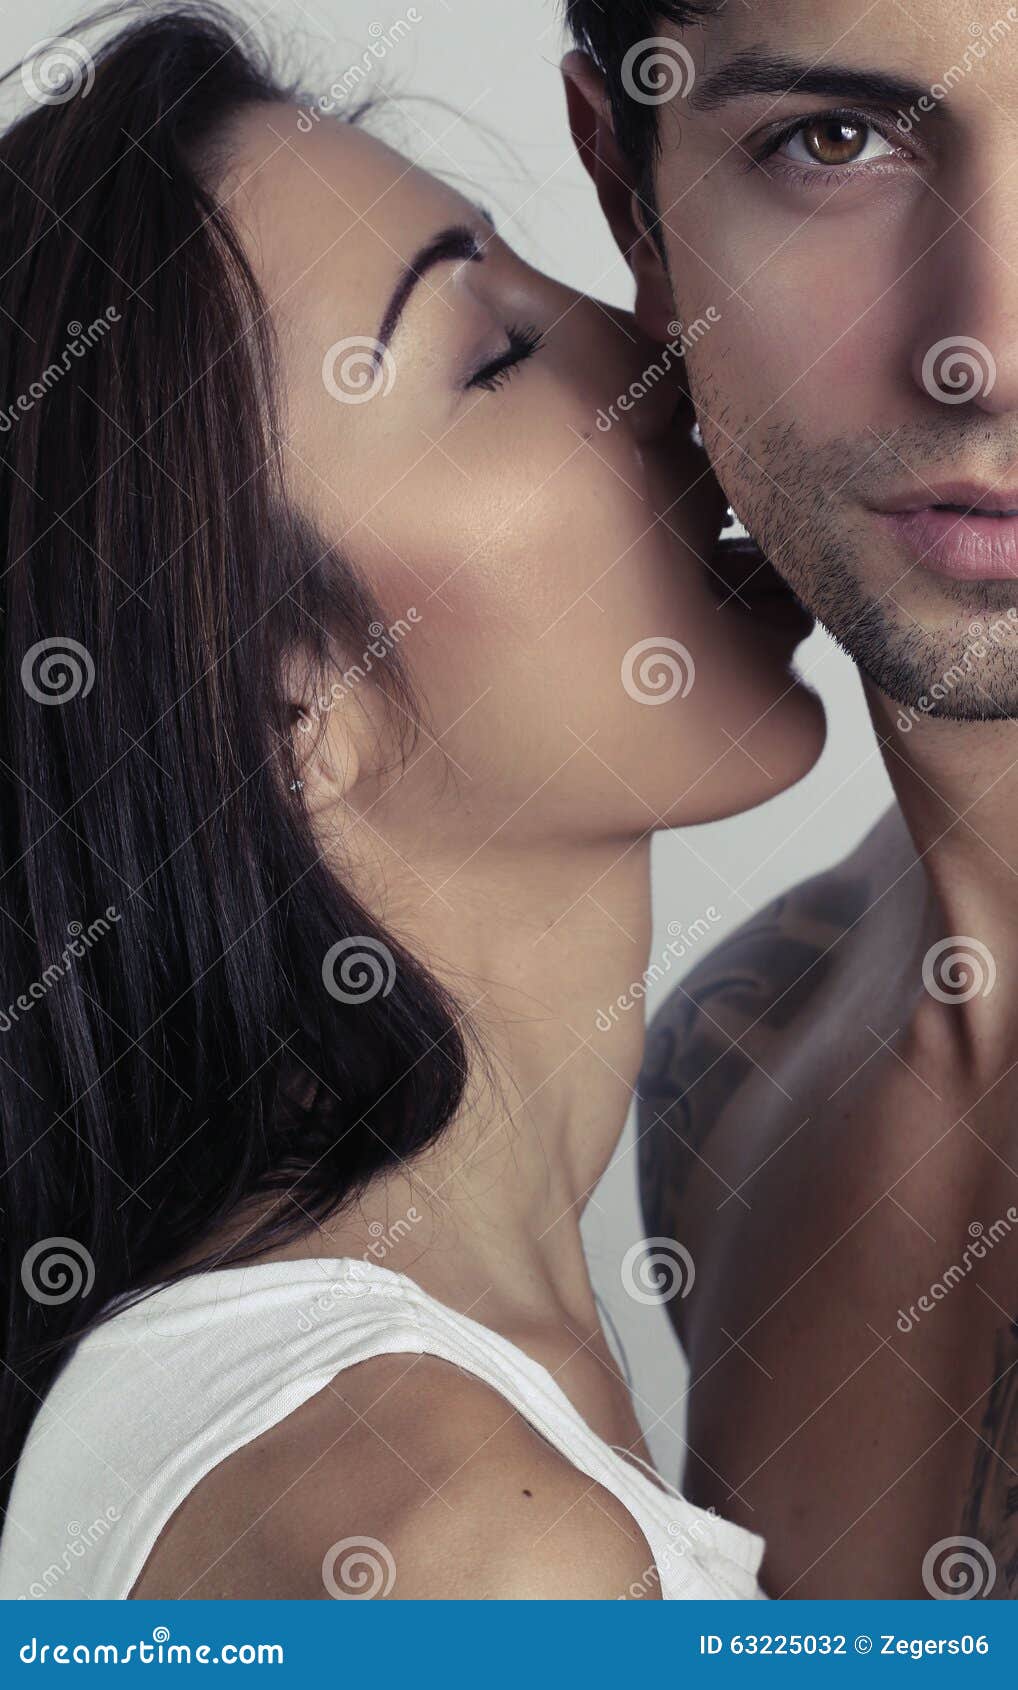 Man Licking Girl